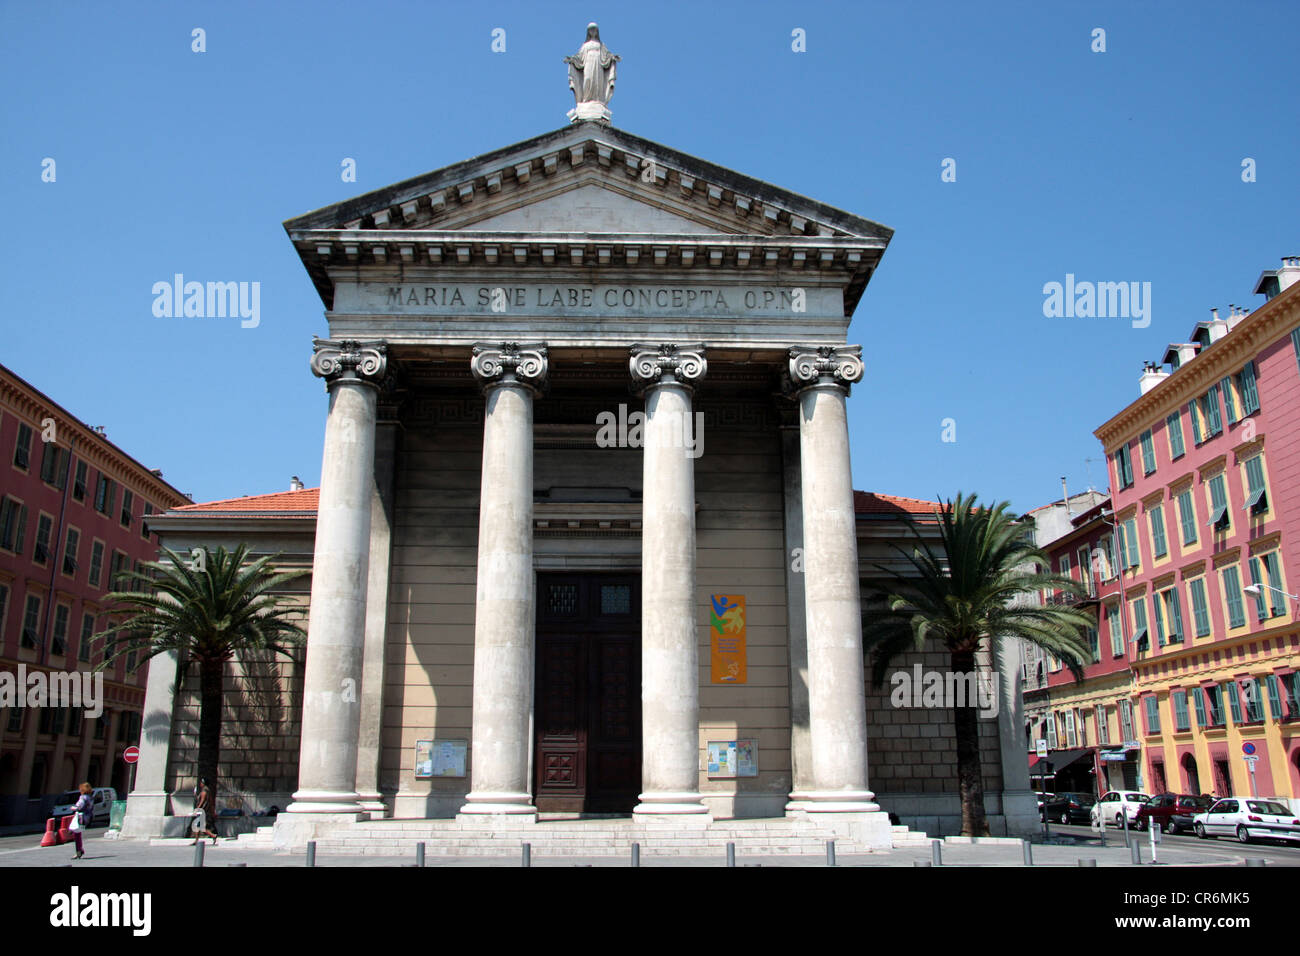 Banque Populaire Cote d'Azur, Nice, France Stock Photo - Alamy